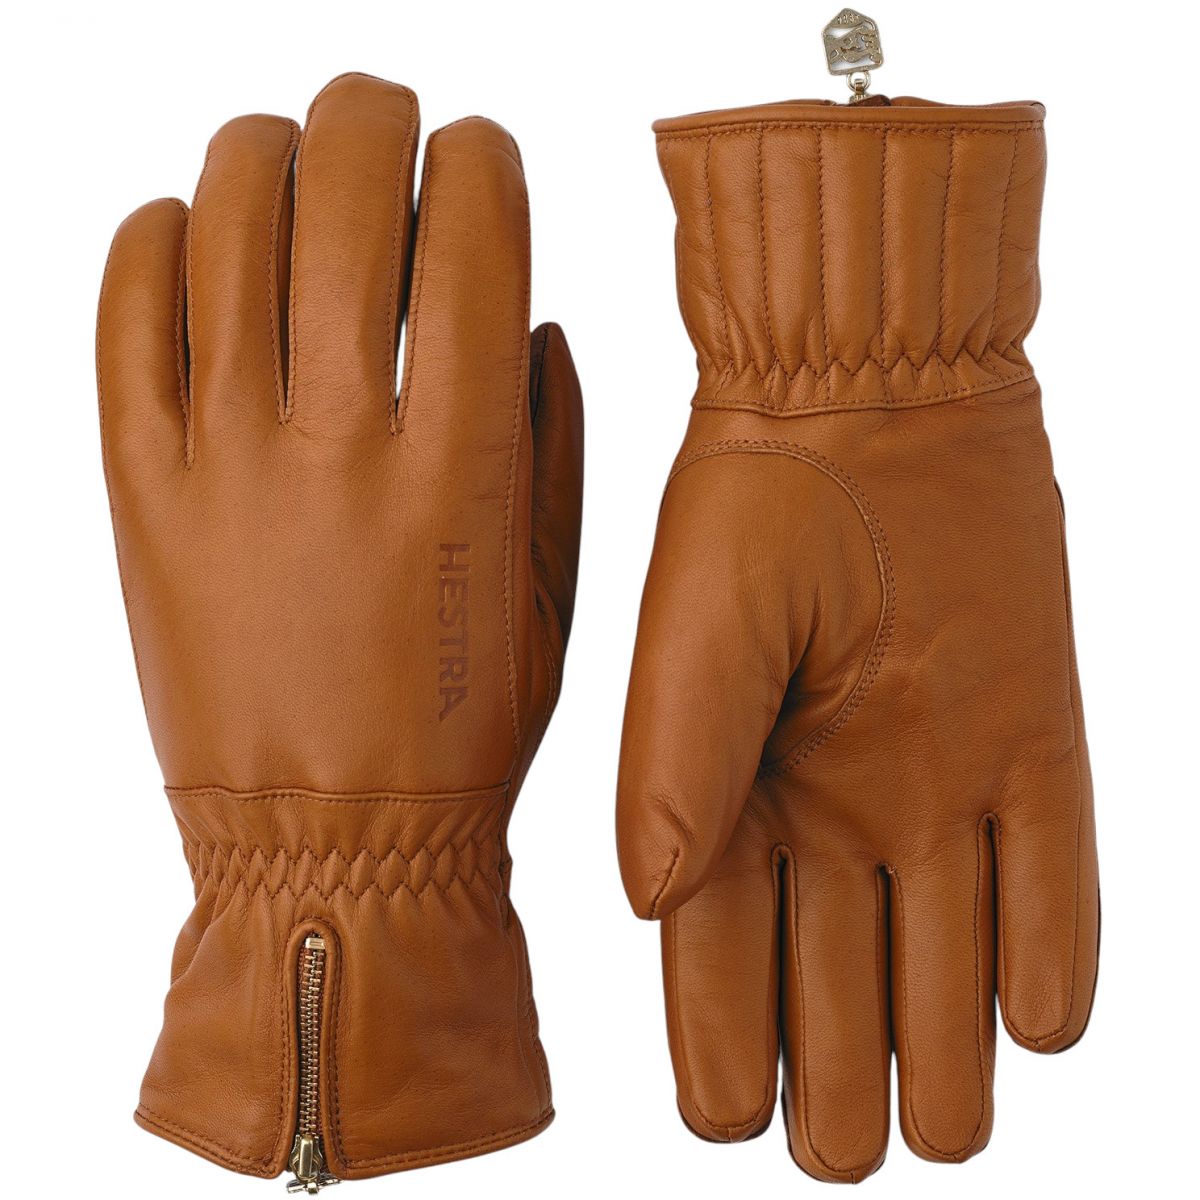 Se Hestra Leather Swisswool Classic, handsker, kork hos AktivVinter.dk